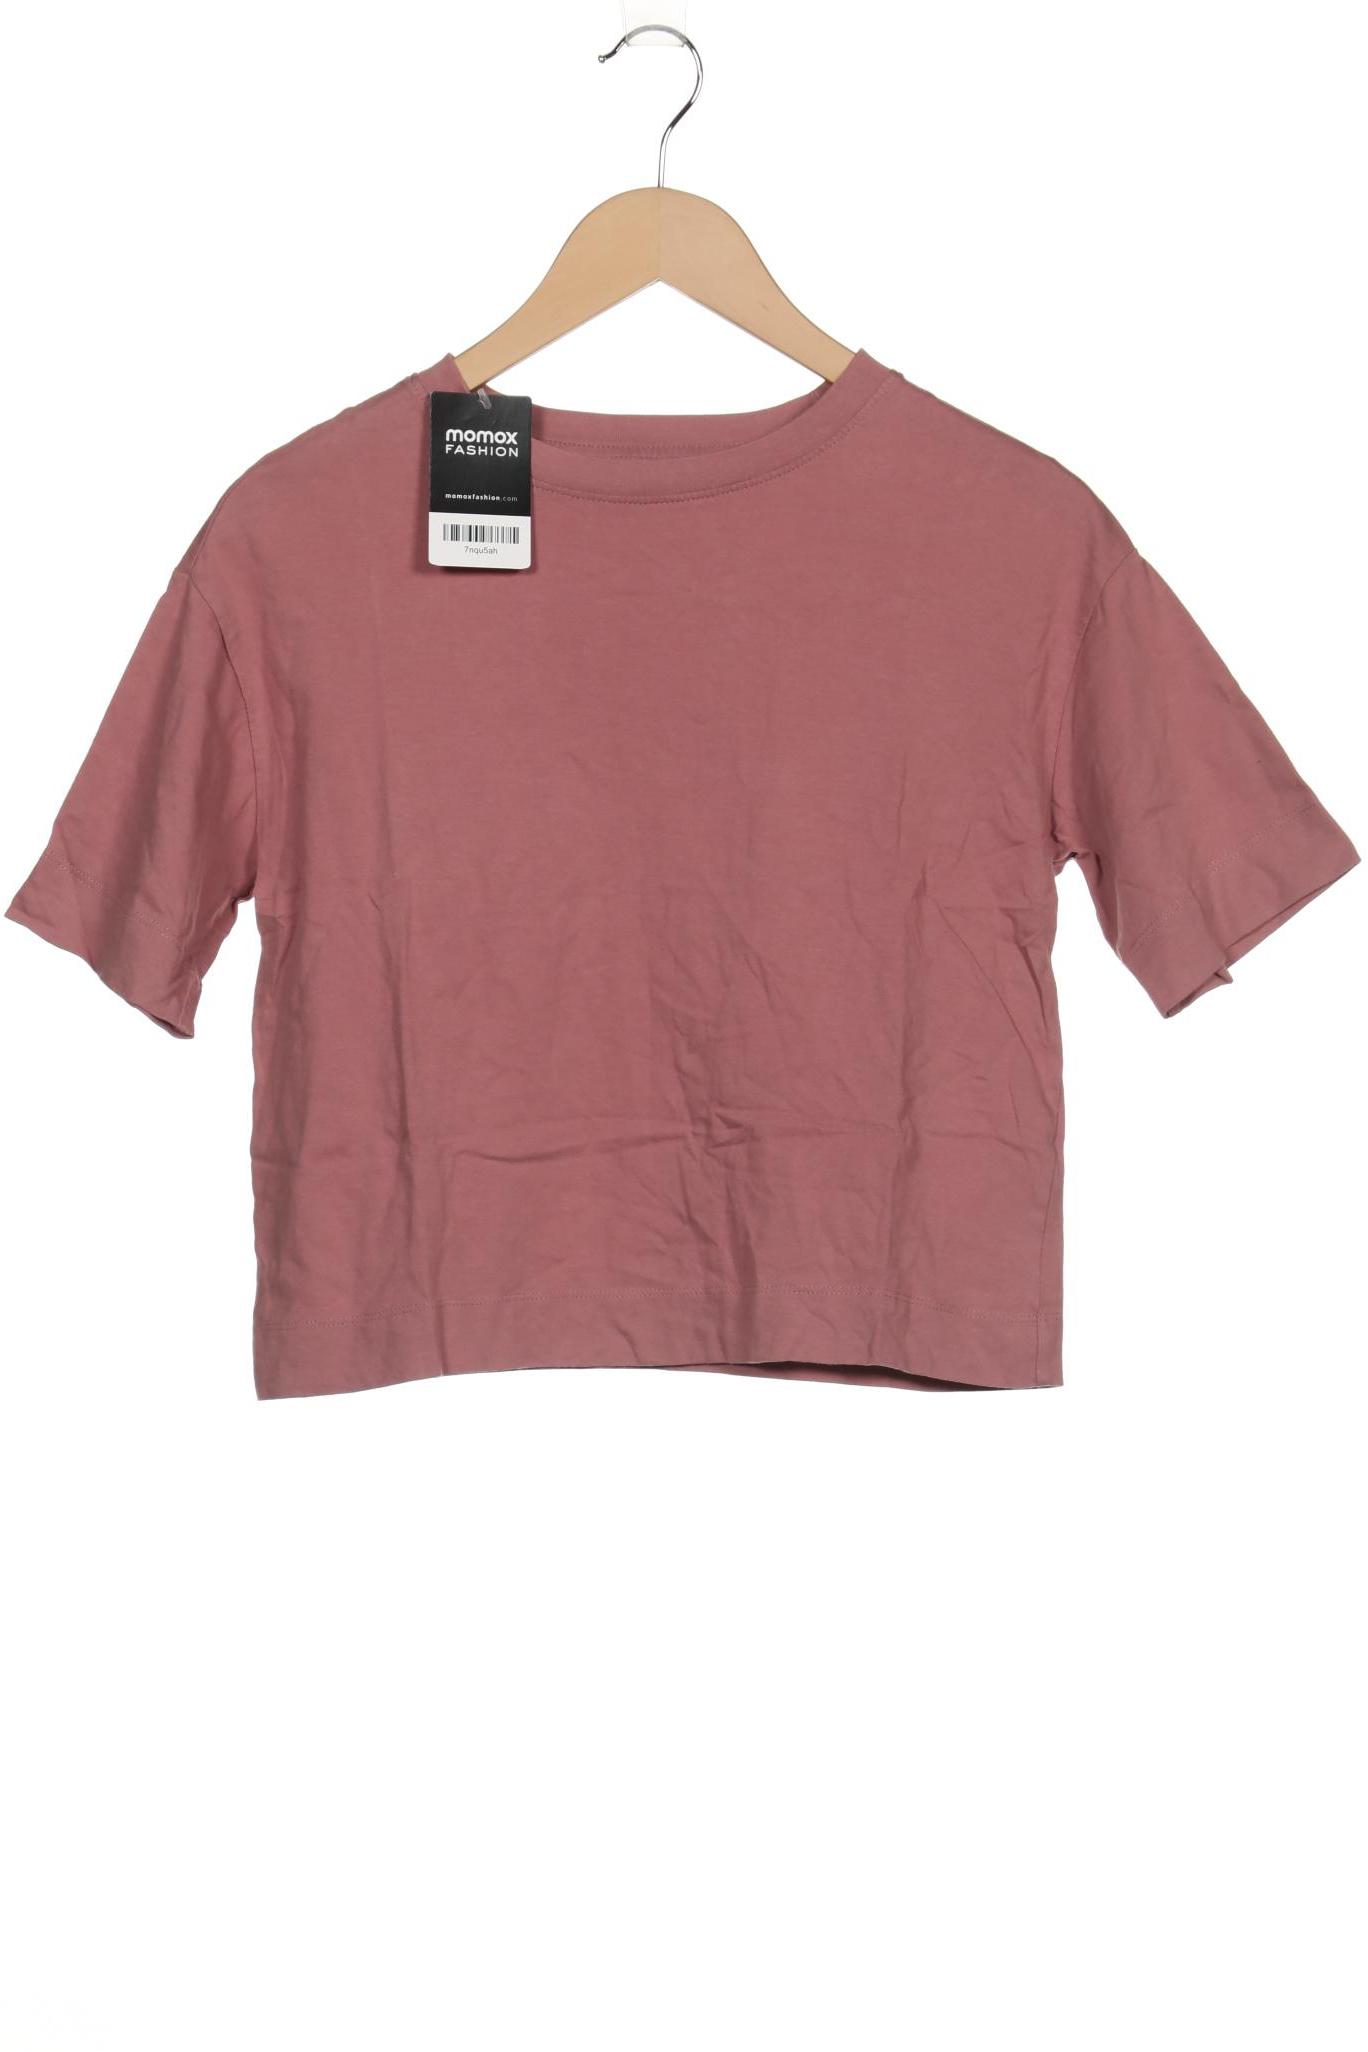 Next Damen T-Shirt, pink von Next